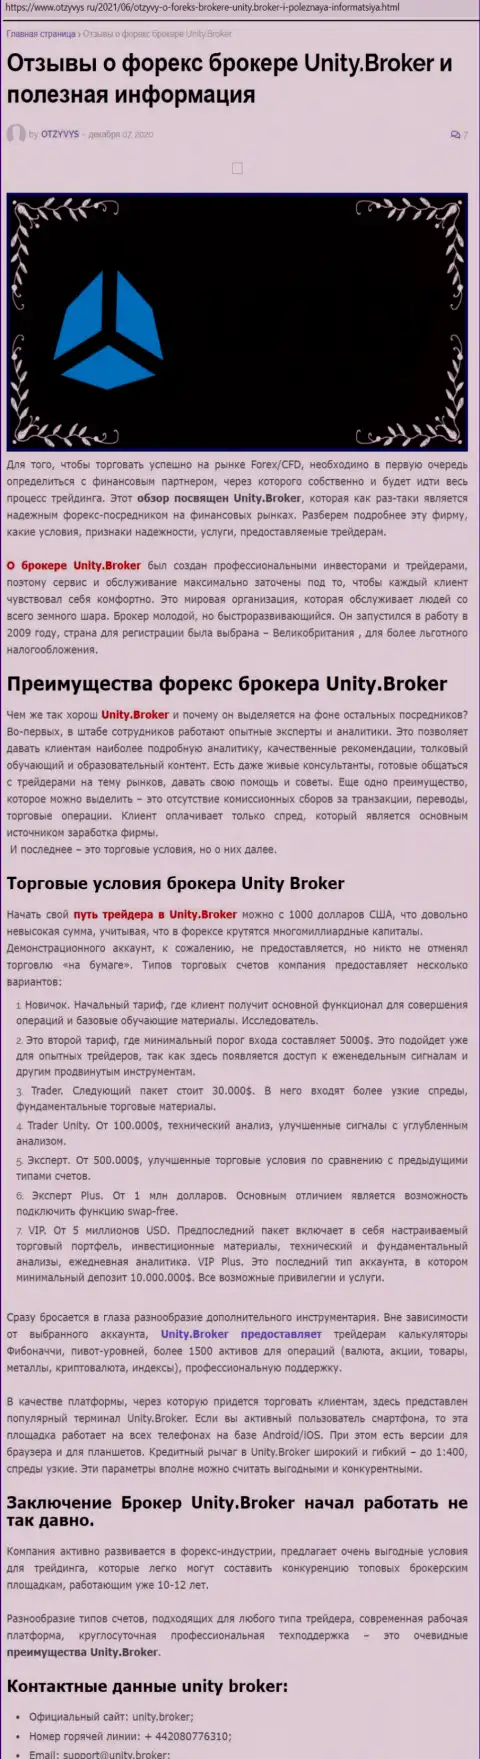 Статья о Форекс-дилинговом центре Unity Broker на портале Отзивис Ру